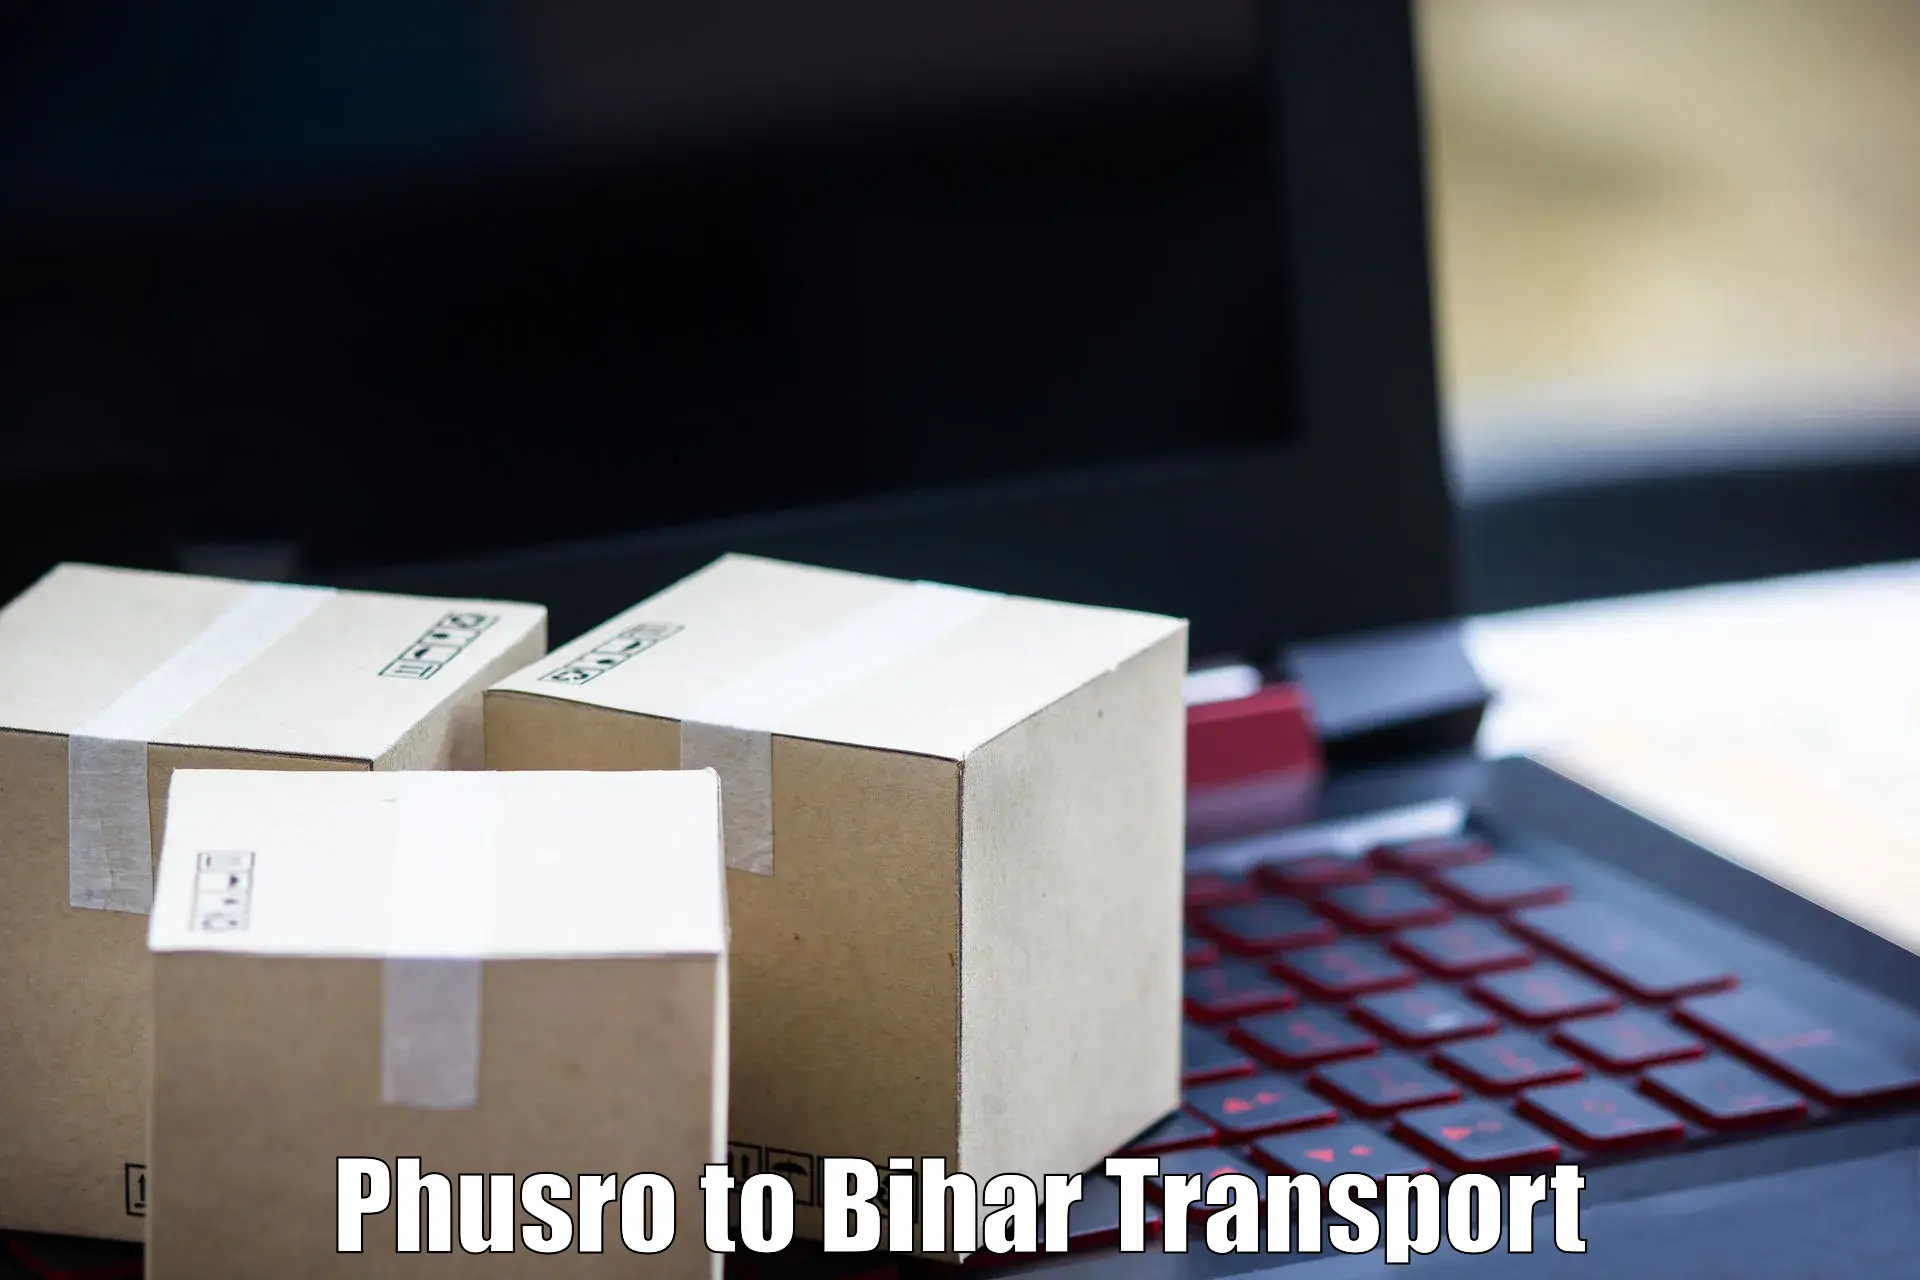 Lorry transport service Phusro to Piro